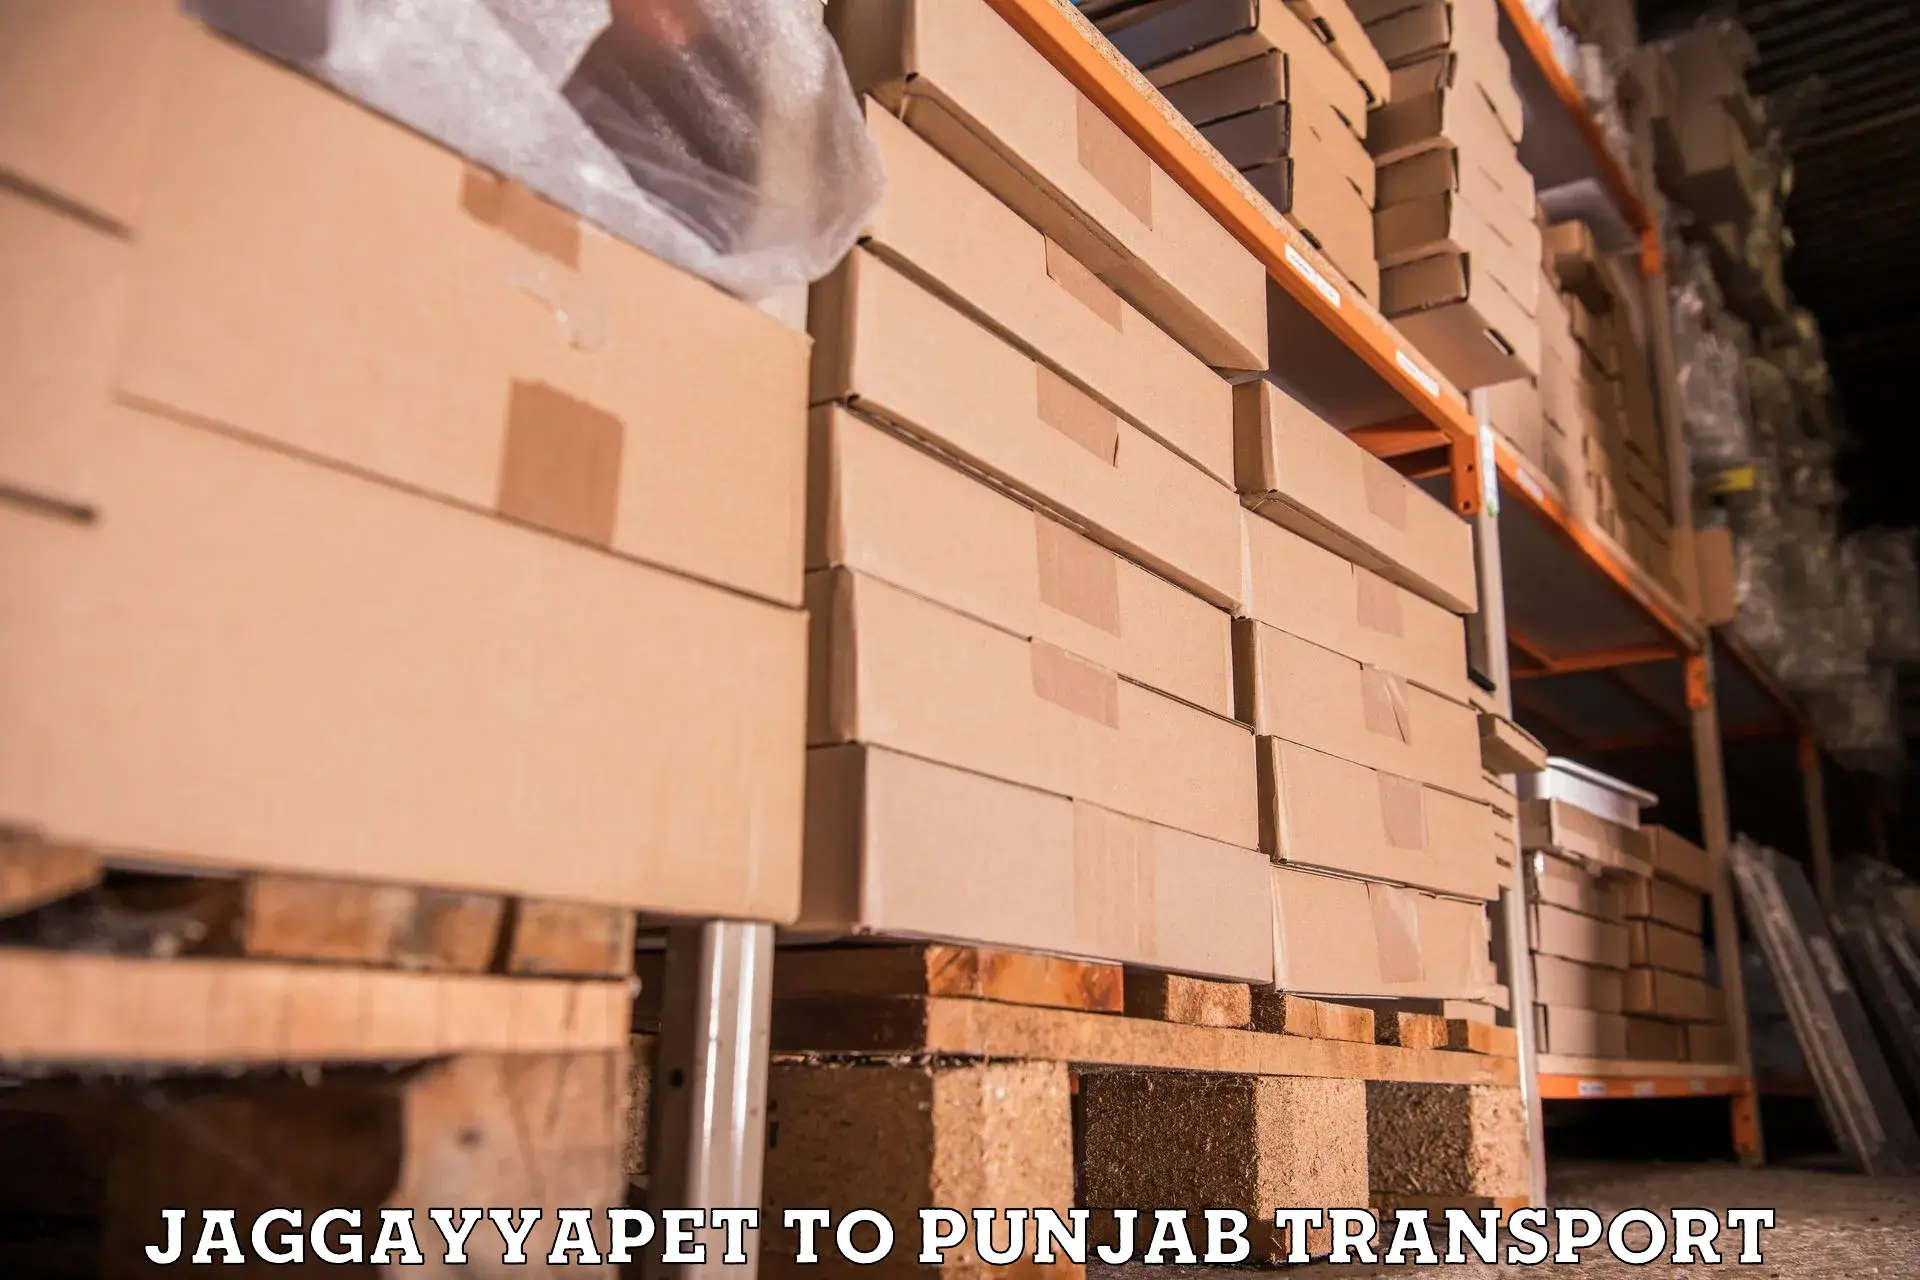 Interstate transport services Jaggayyapet to Punjab